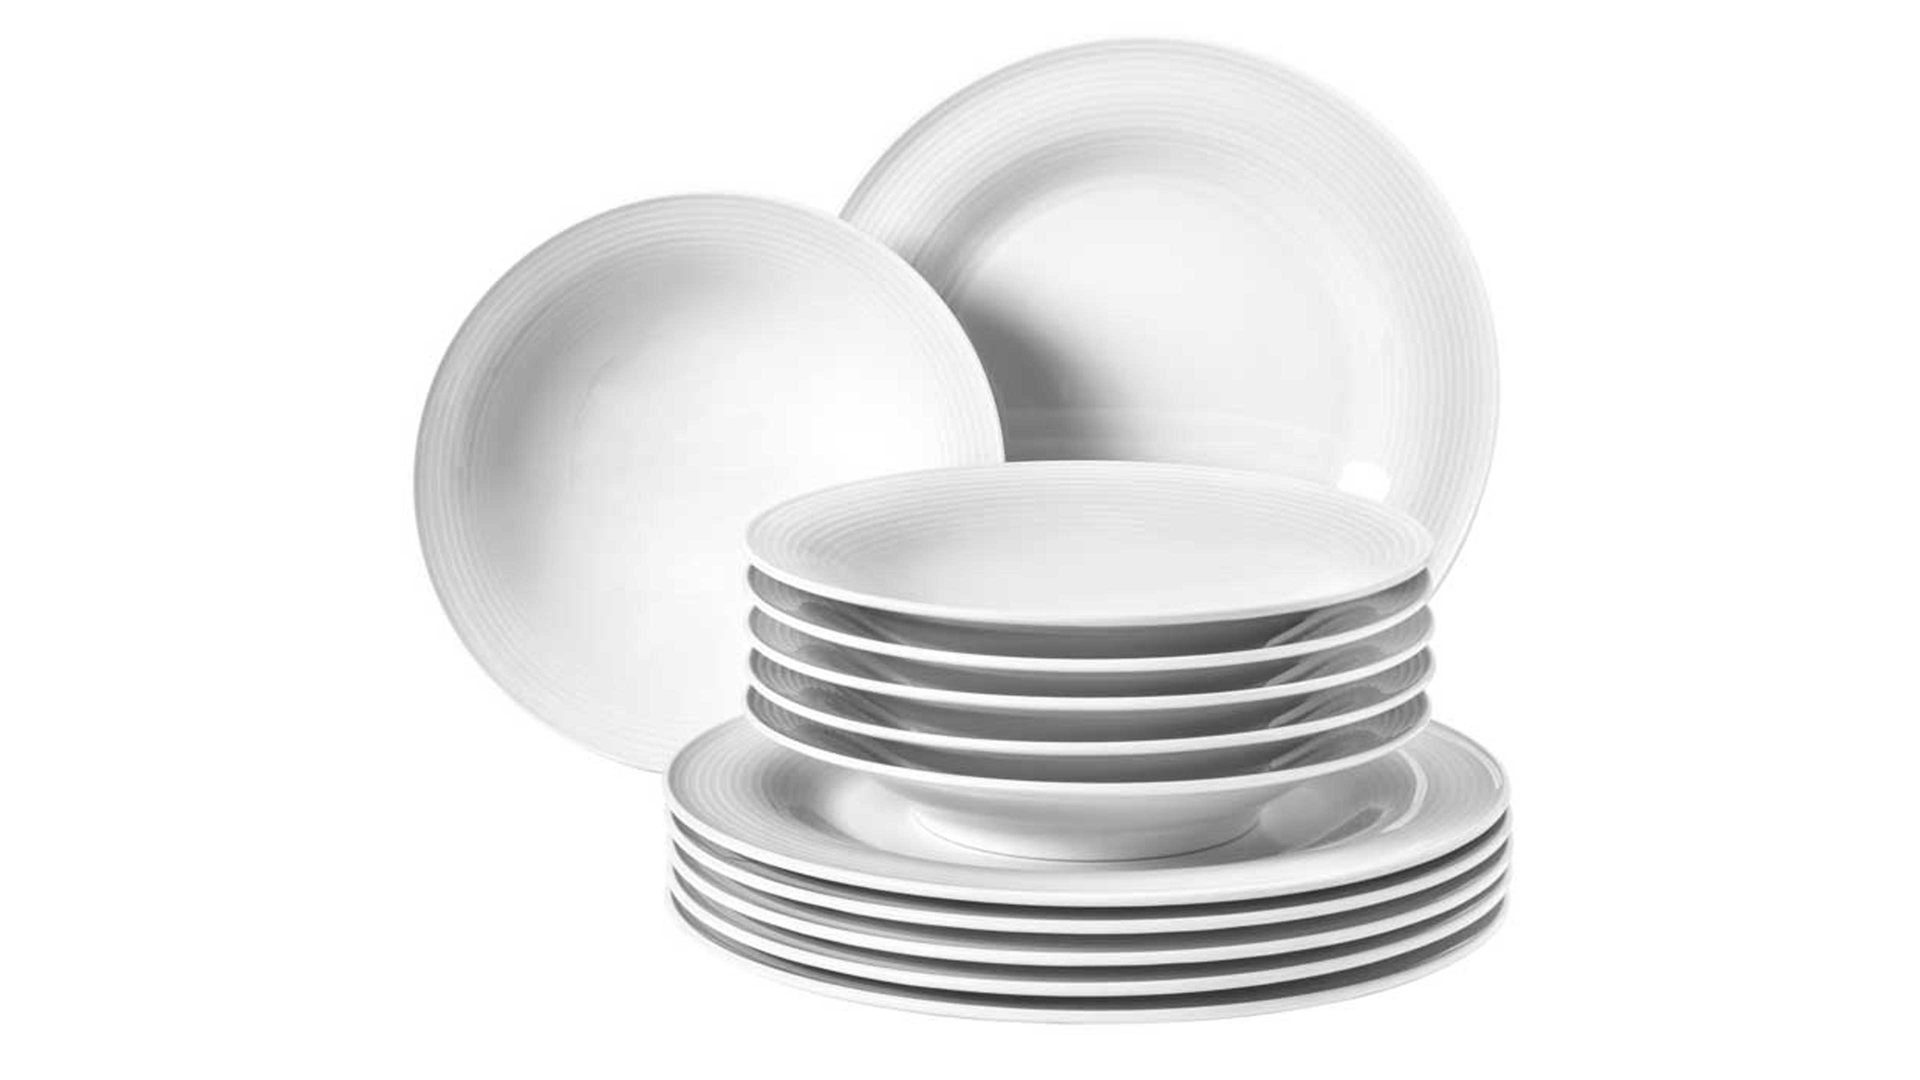 Tafelservice Seltmann aus Porzellan in Weiß Seltmann Geschirrserie Beat 3 – Tafelservice weißes Porzellan – 12-teilig